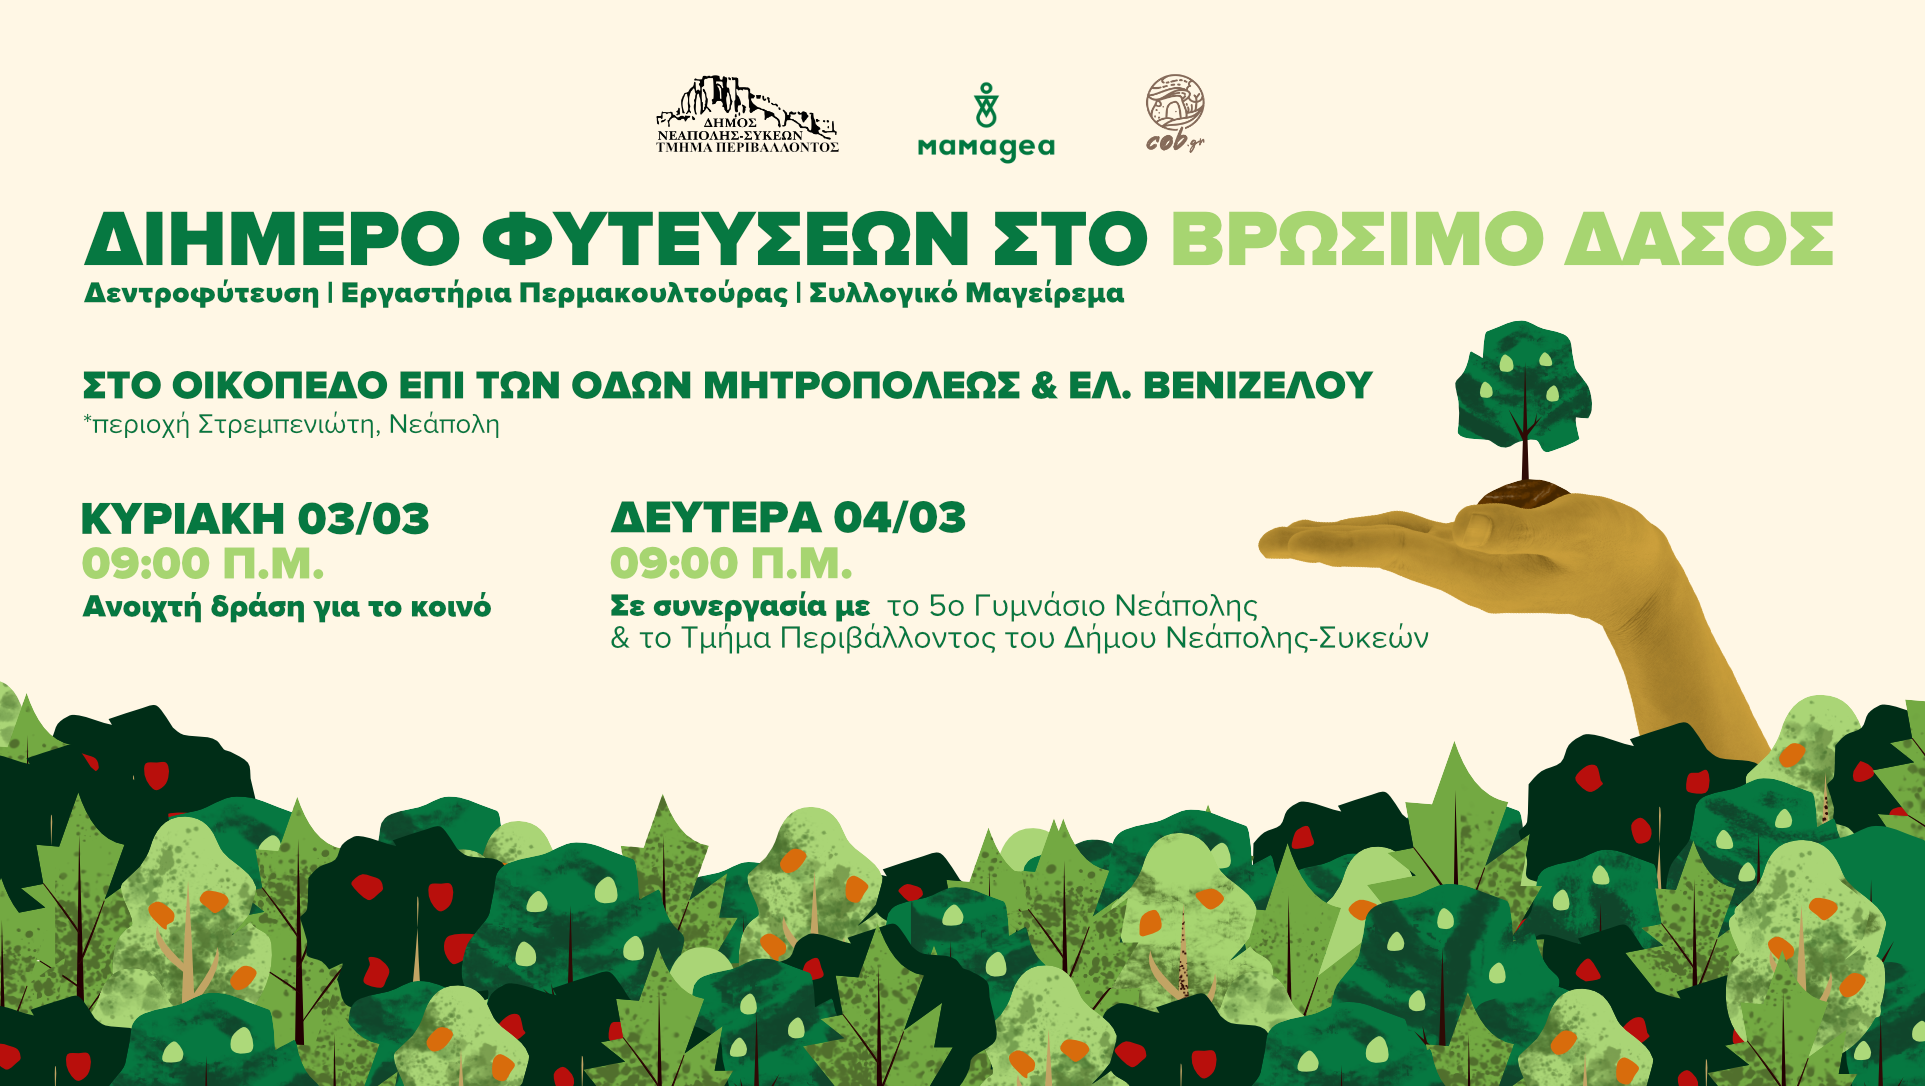 Θεσσαλονίκη: Διήμερο φυτεύσεων στο βρώσιμο δάσος Νεάπολης